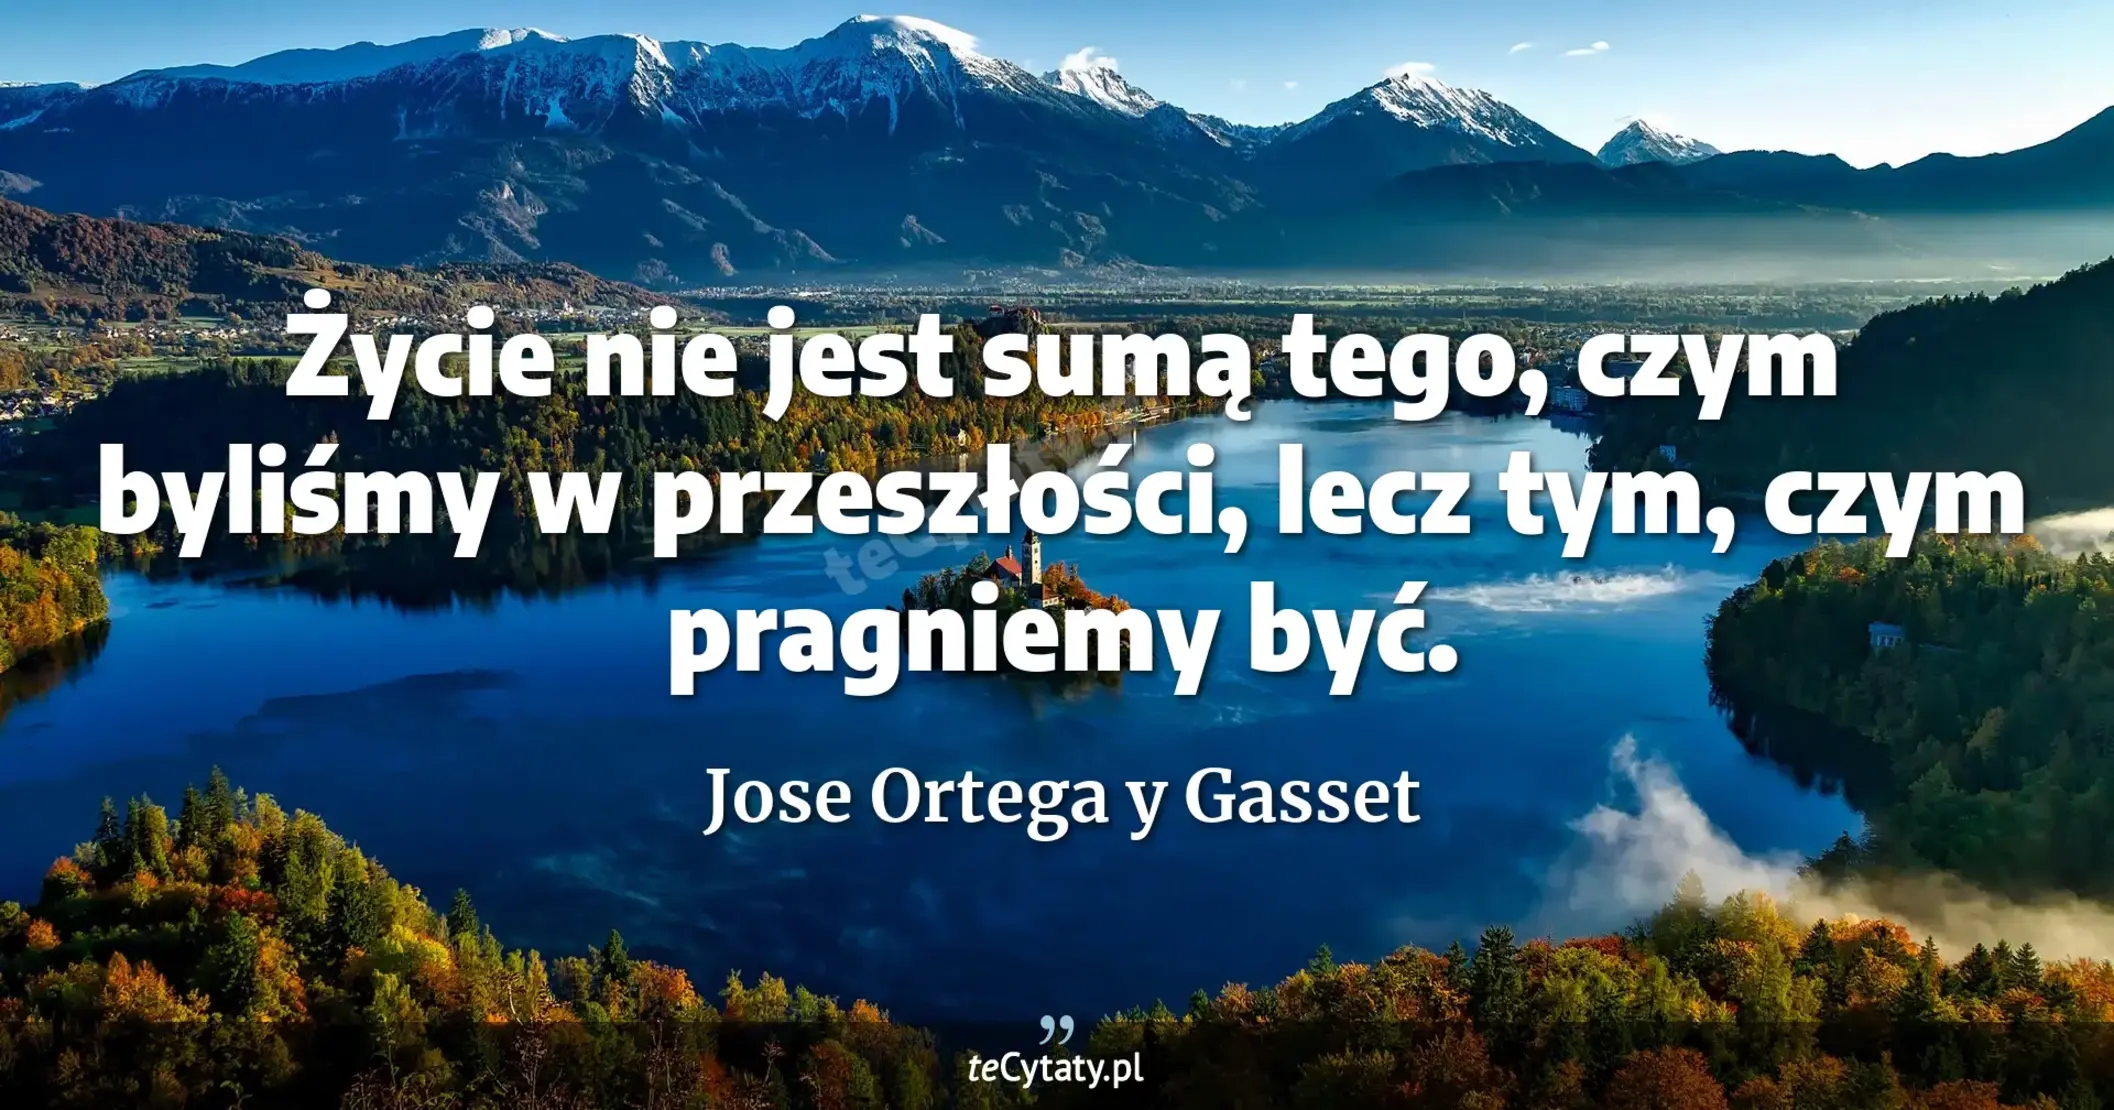 Życie nie jest sumą tego, czym byliśmy w przeszłości, lecz tym, czym pragniemy być. - Jose Ortega y Gasset